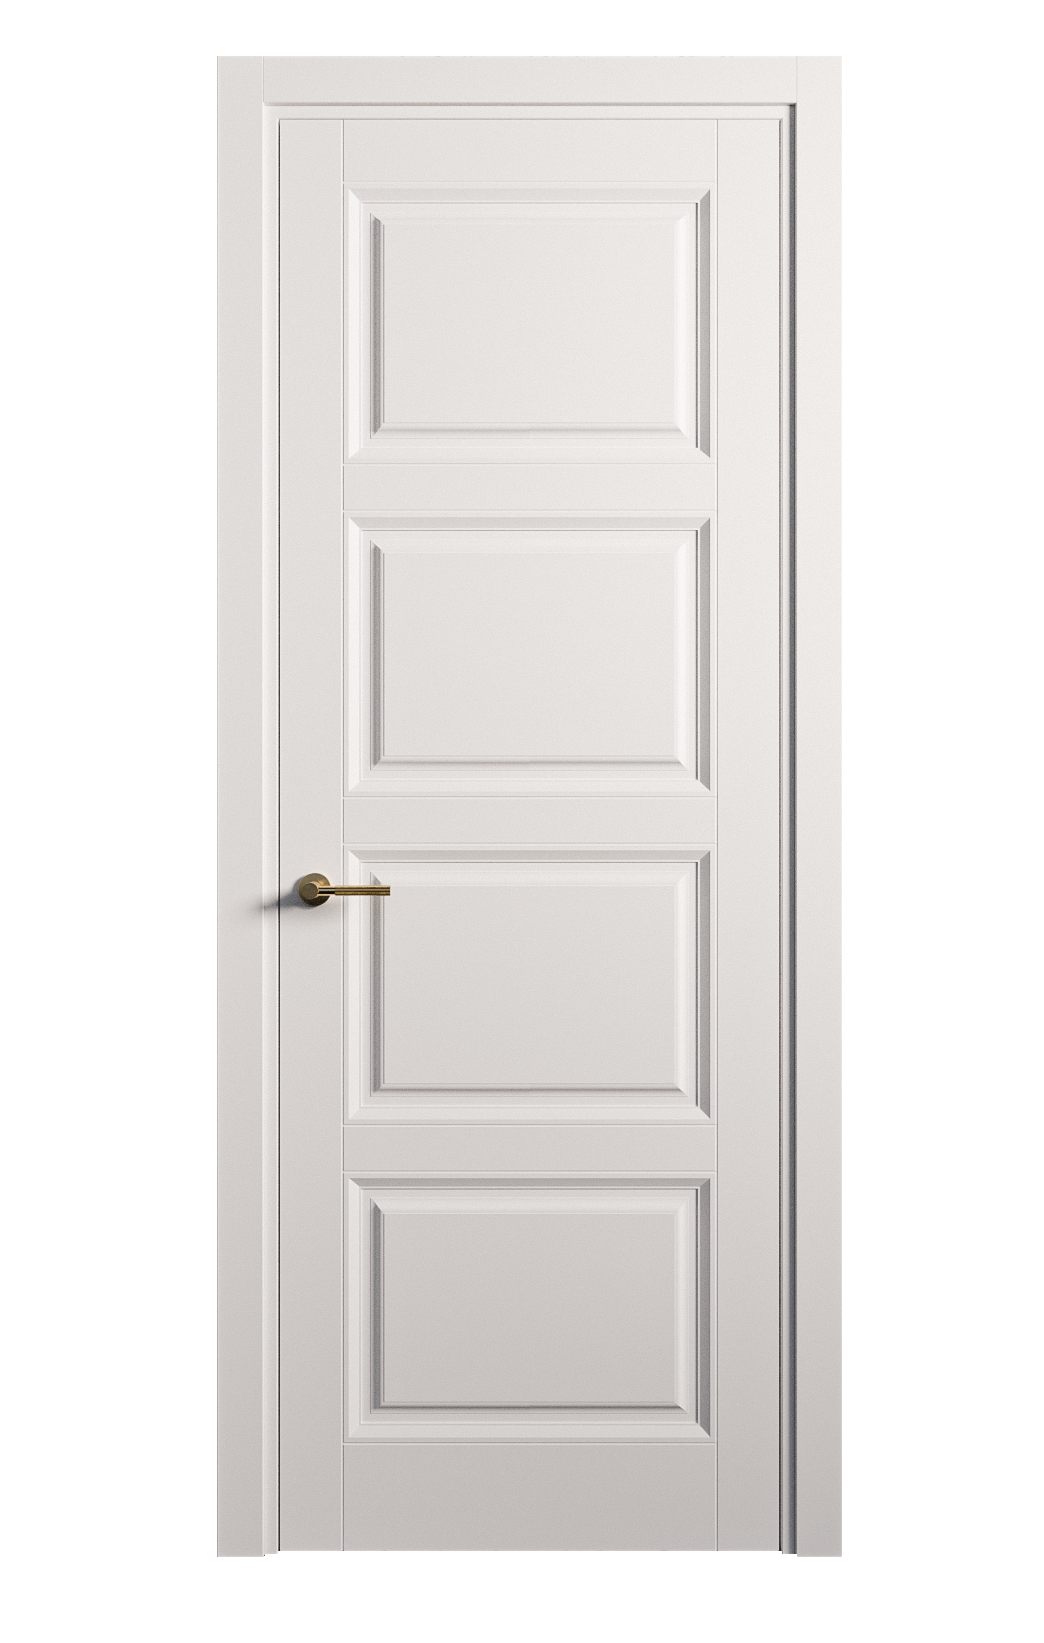 Межкомнатная дверь Venezia-4 глухая эмаль ral 9003 25854